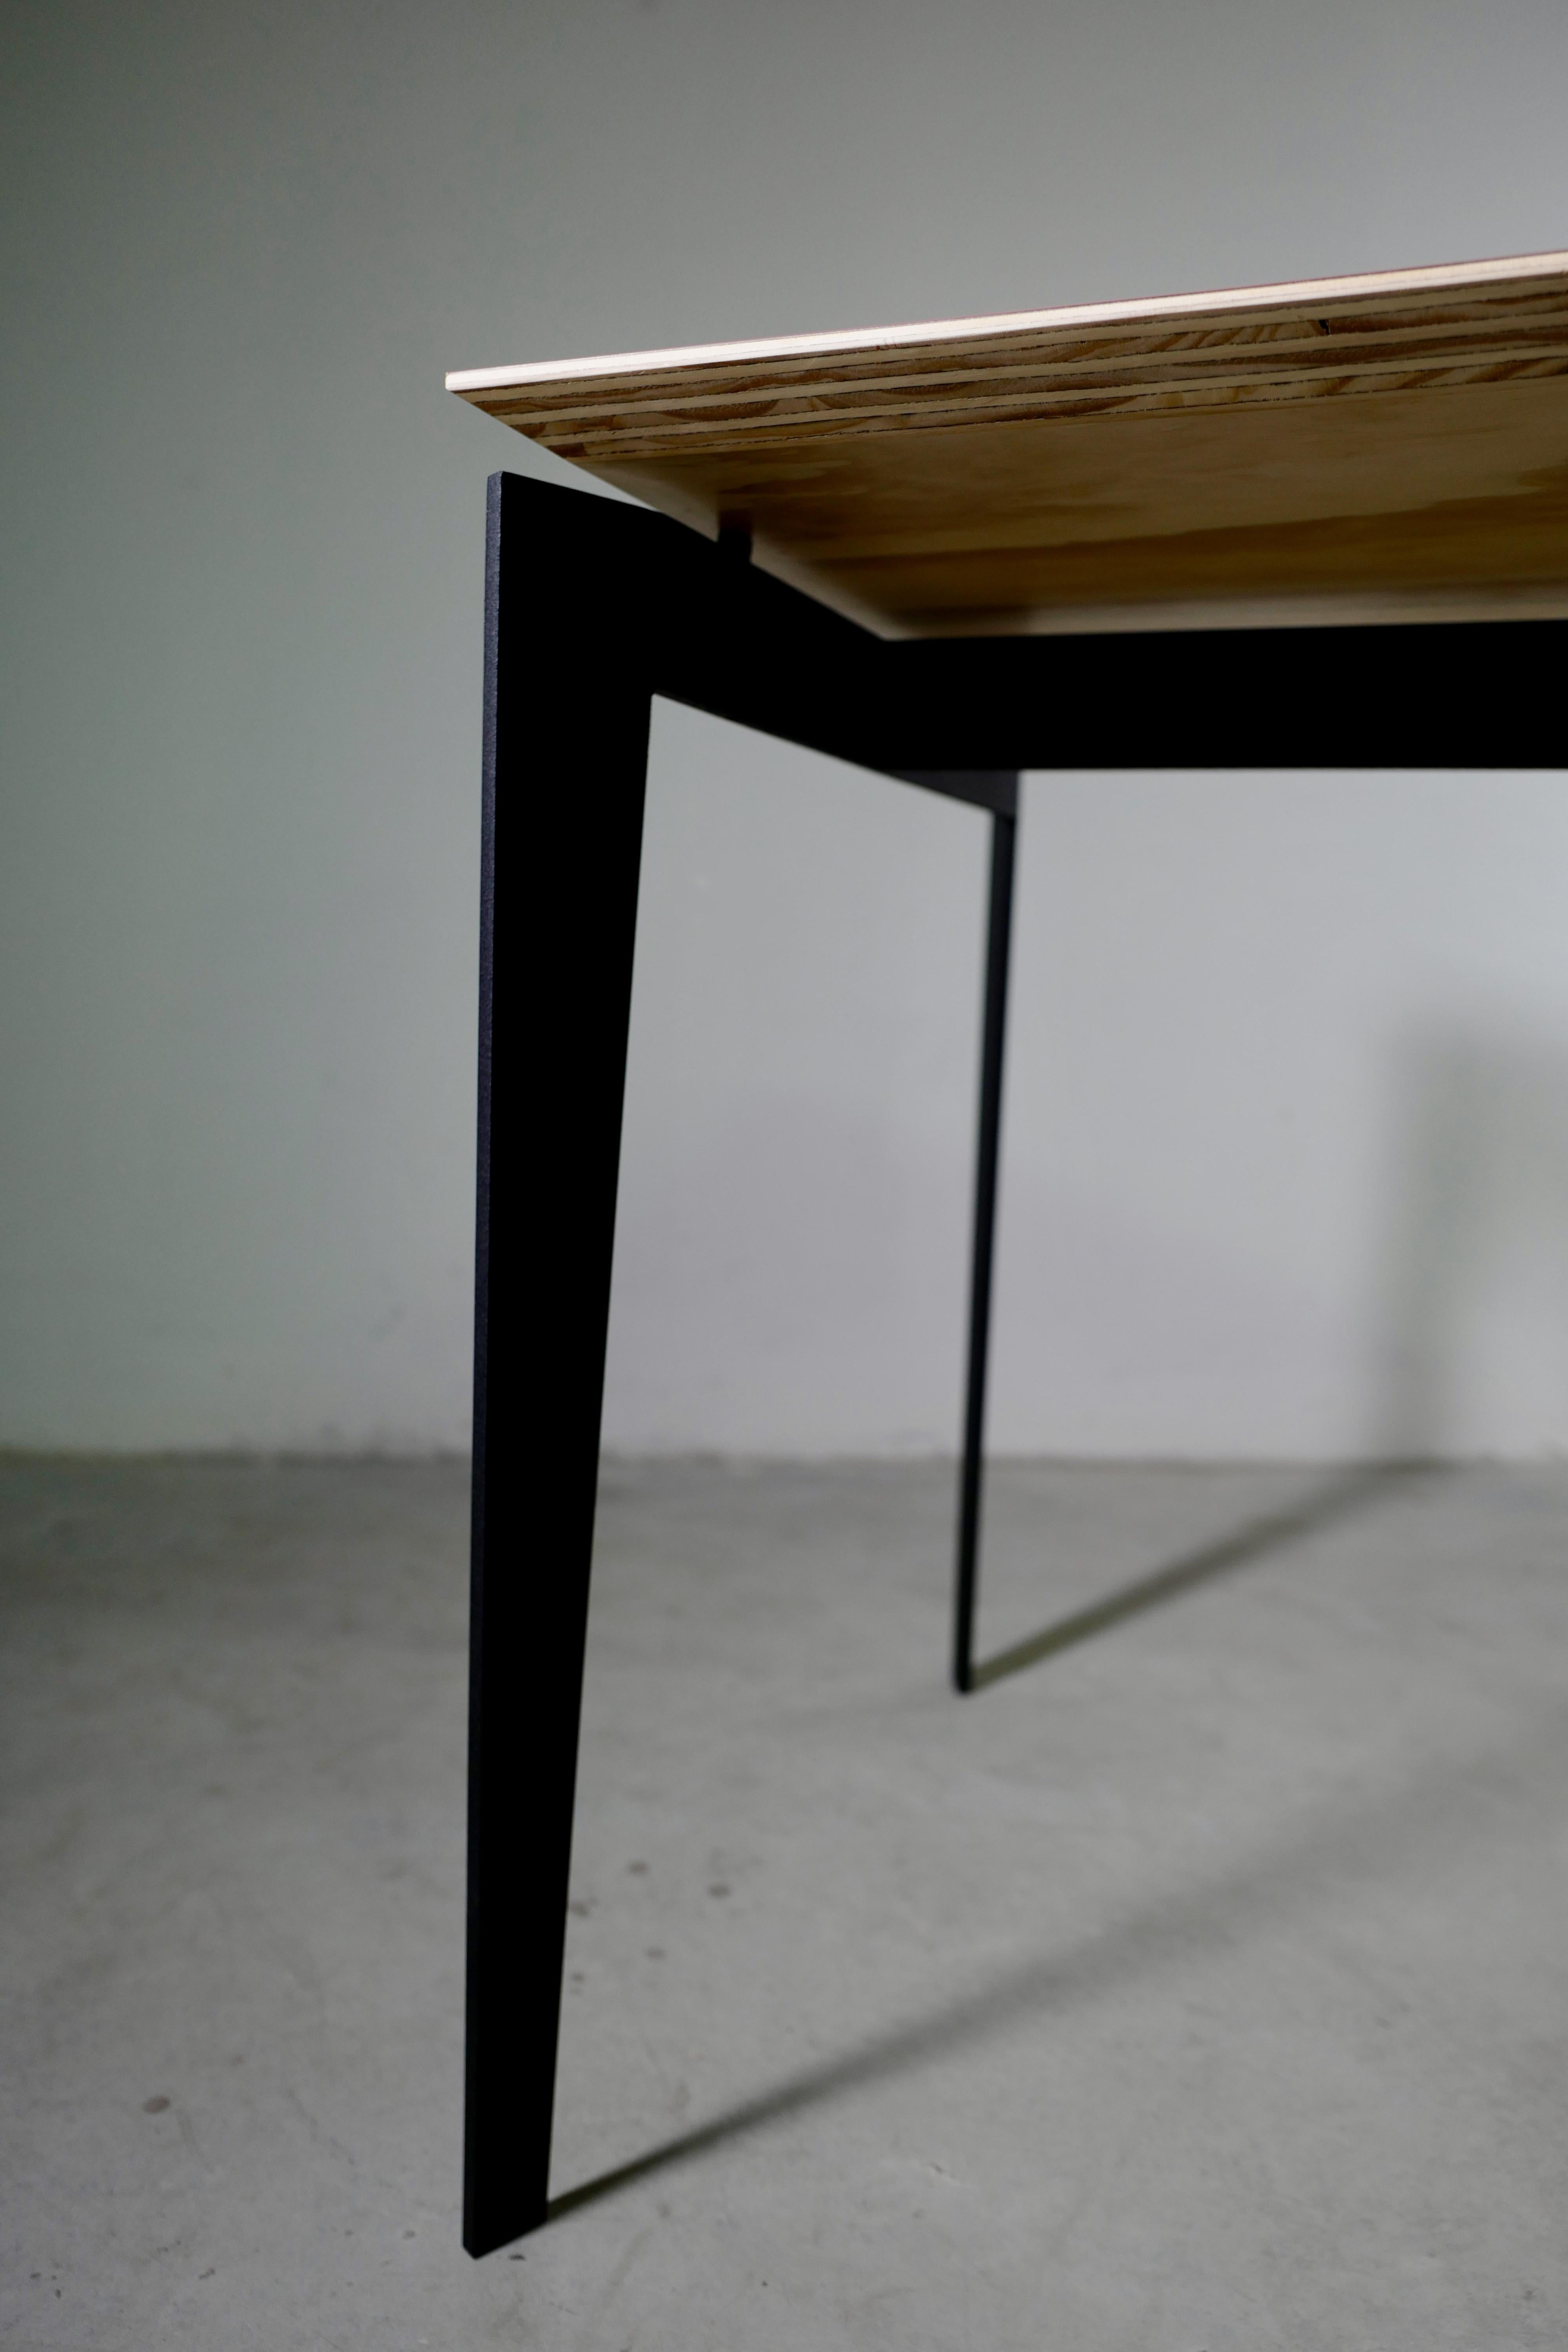 Ein kompakter Multifunktionstisch, ein rechteckiger, zeitgenössischer italienischer Schreibtisch mit 24 mm Birkensperrholz und einer Platte aus 1 mm mattem Kunststofflaminat. Die Beine und der Rahmen sind aus pulverbeschichtetem Eisen mit schwarzer